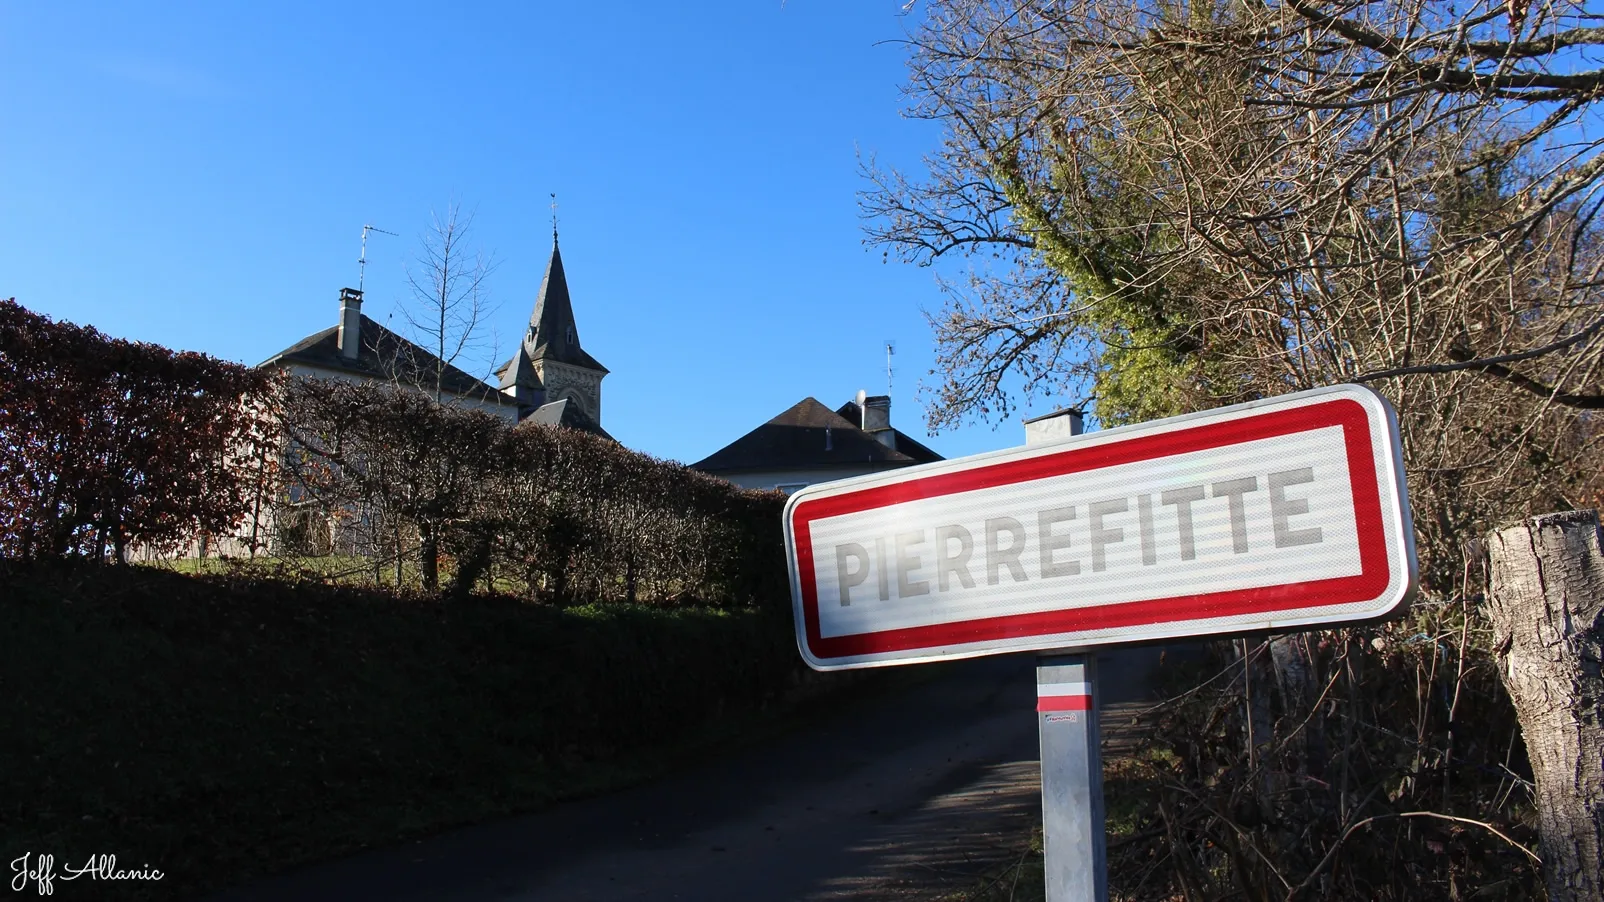 Corrèze découverte - Photo N° 1 - Le hameau de Pierrefitte - 19450 - Pierrefitte - Petit patrimoine - Quelques pas - Autour de vous